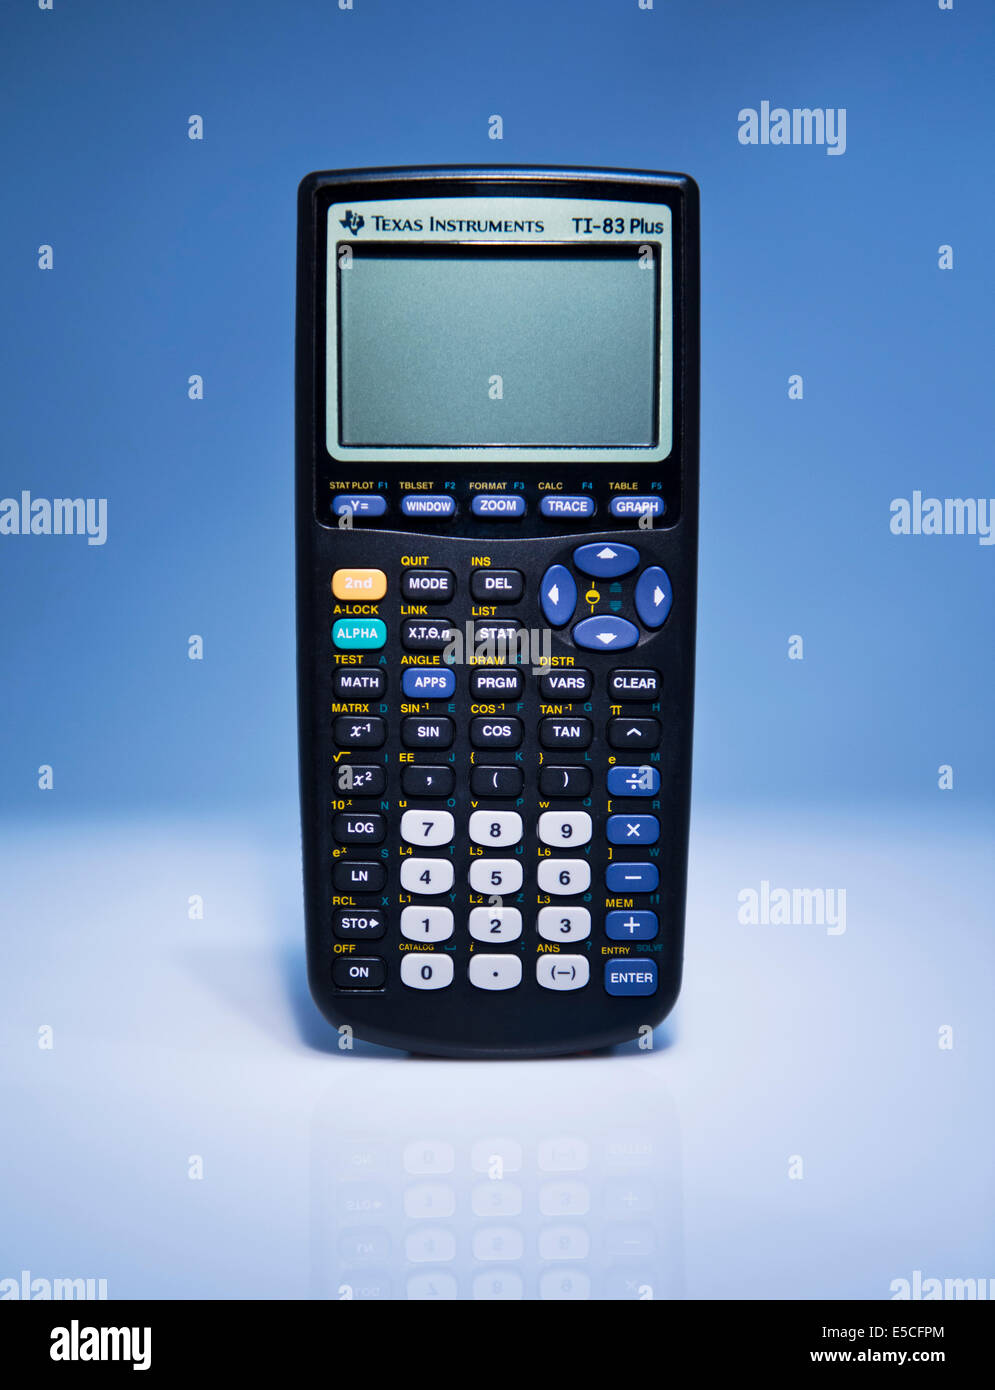 Vista frontale di dettaglio di un Texas Instruments Ti-83 Plus calcolatrice scientifica. Foto Stock